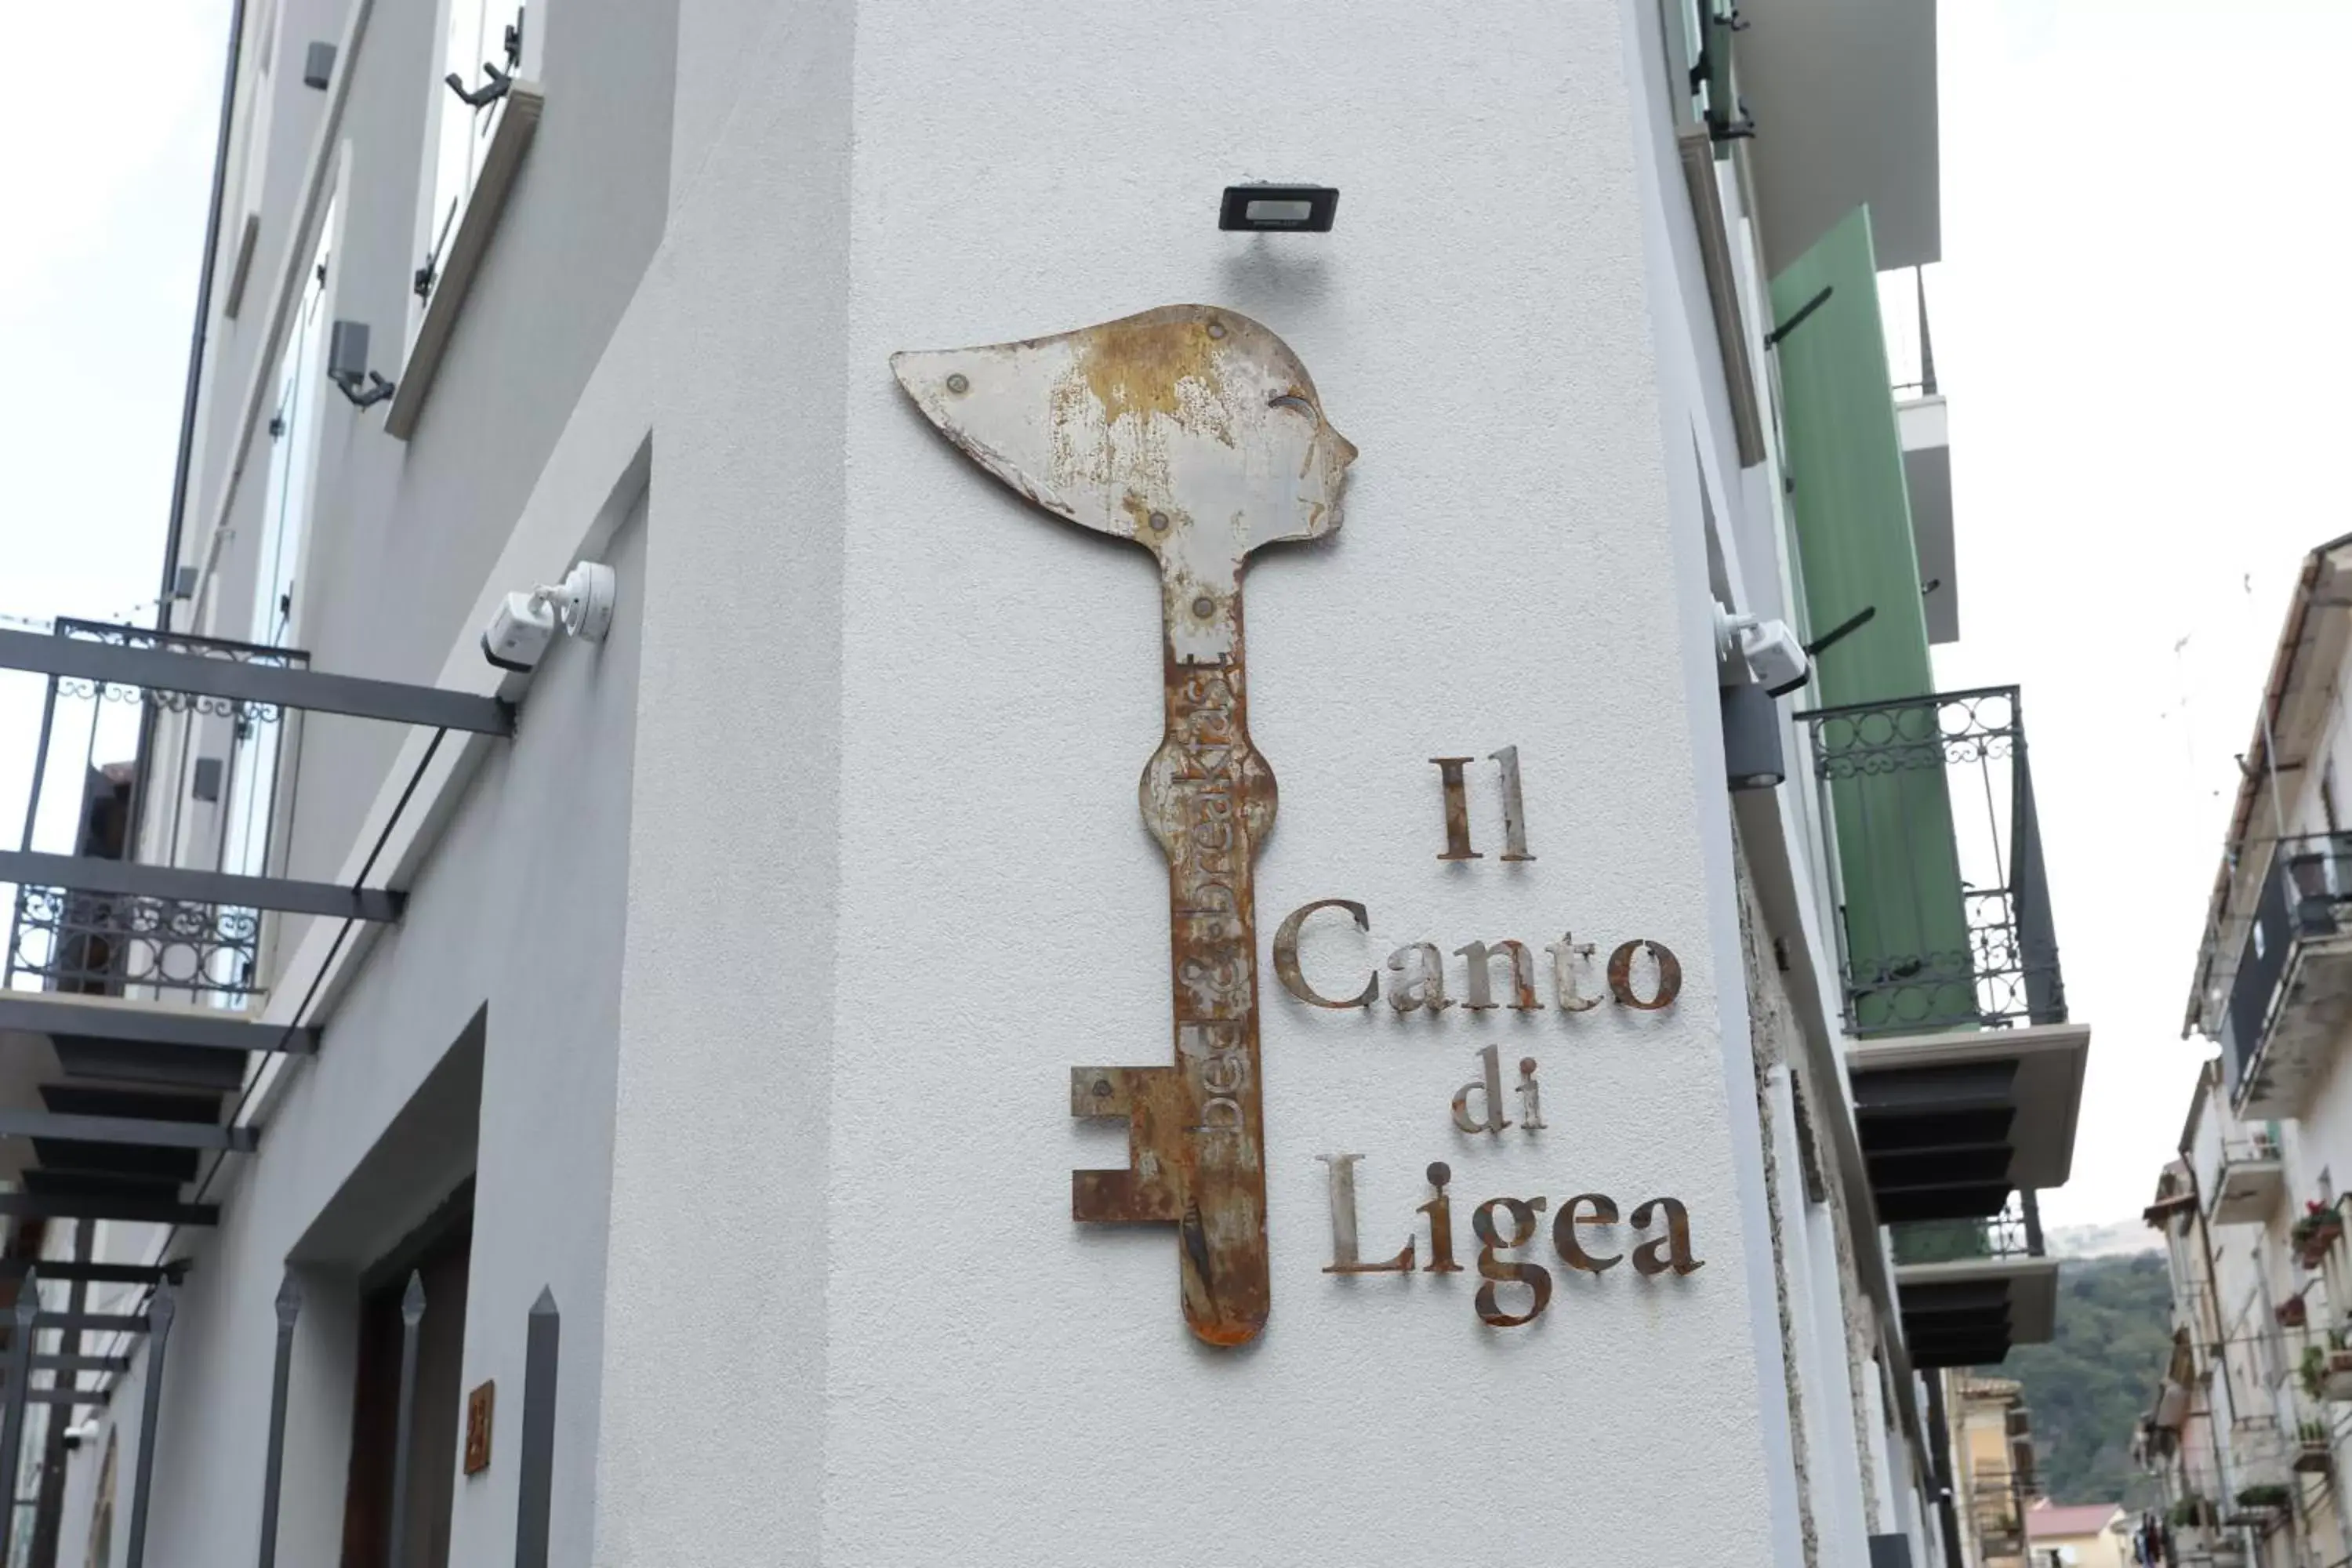 Property building in Il Canto di Ligea